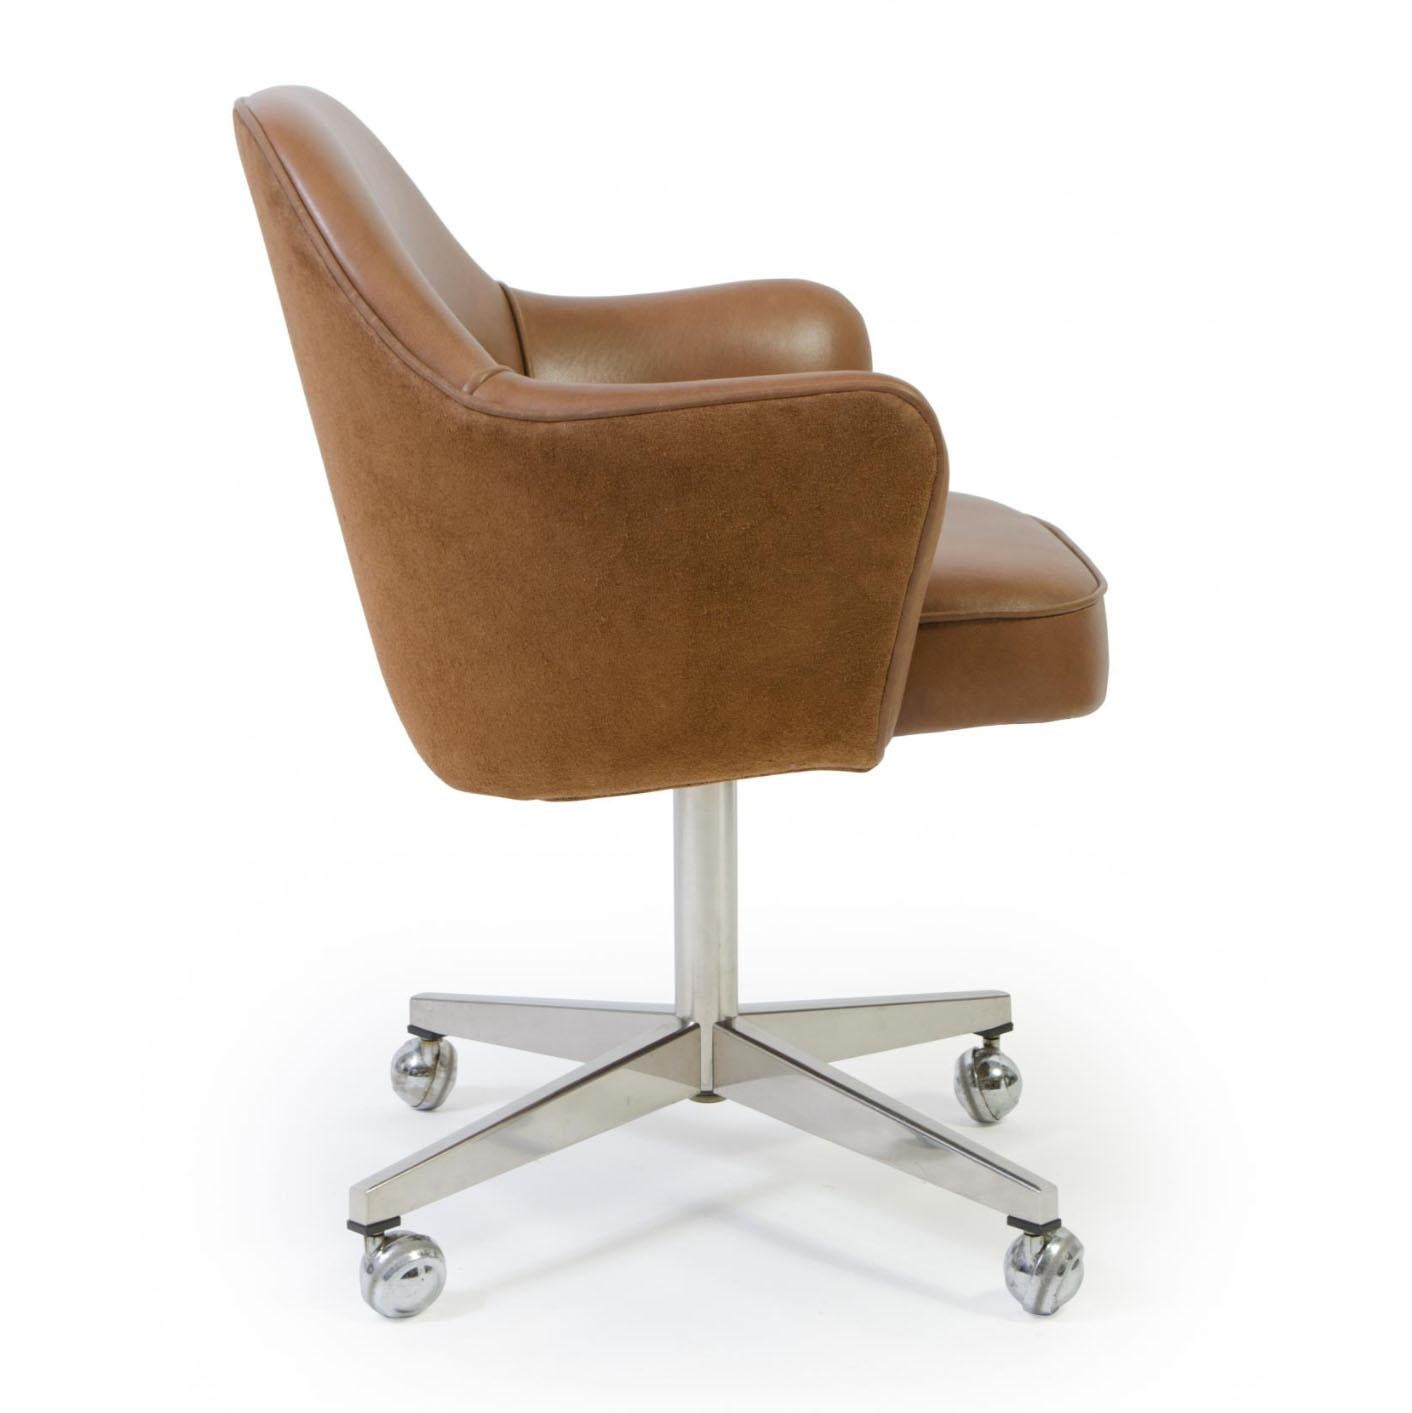 Depuis des années, Montage restaure des fauteuils de direction Saarinen dans tous les tissus possibles et imaginables, dans son propre atelier. Nous avons restauré ces chaises dans un cuir italien souple de couleur selle, en utilisant le côté daim